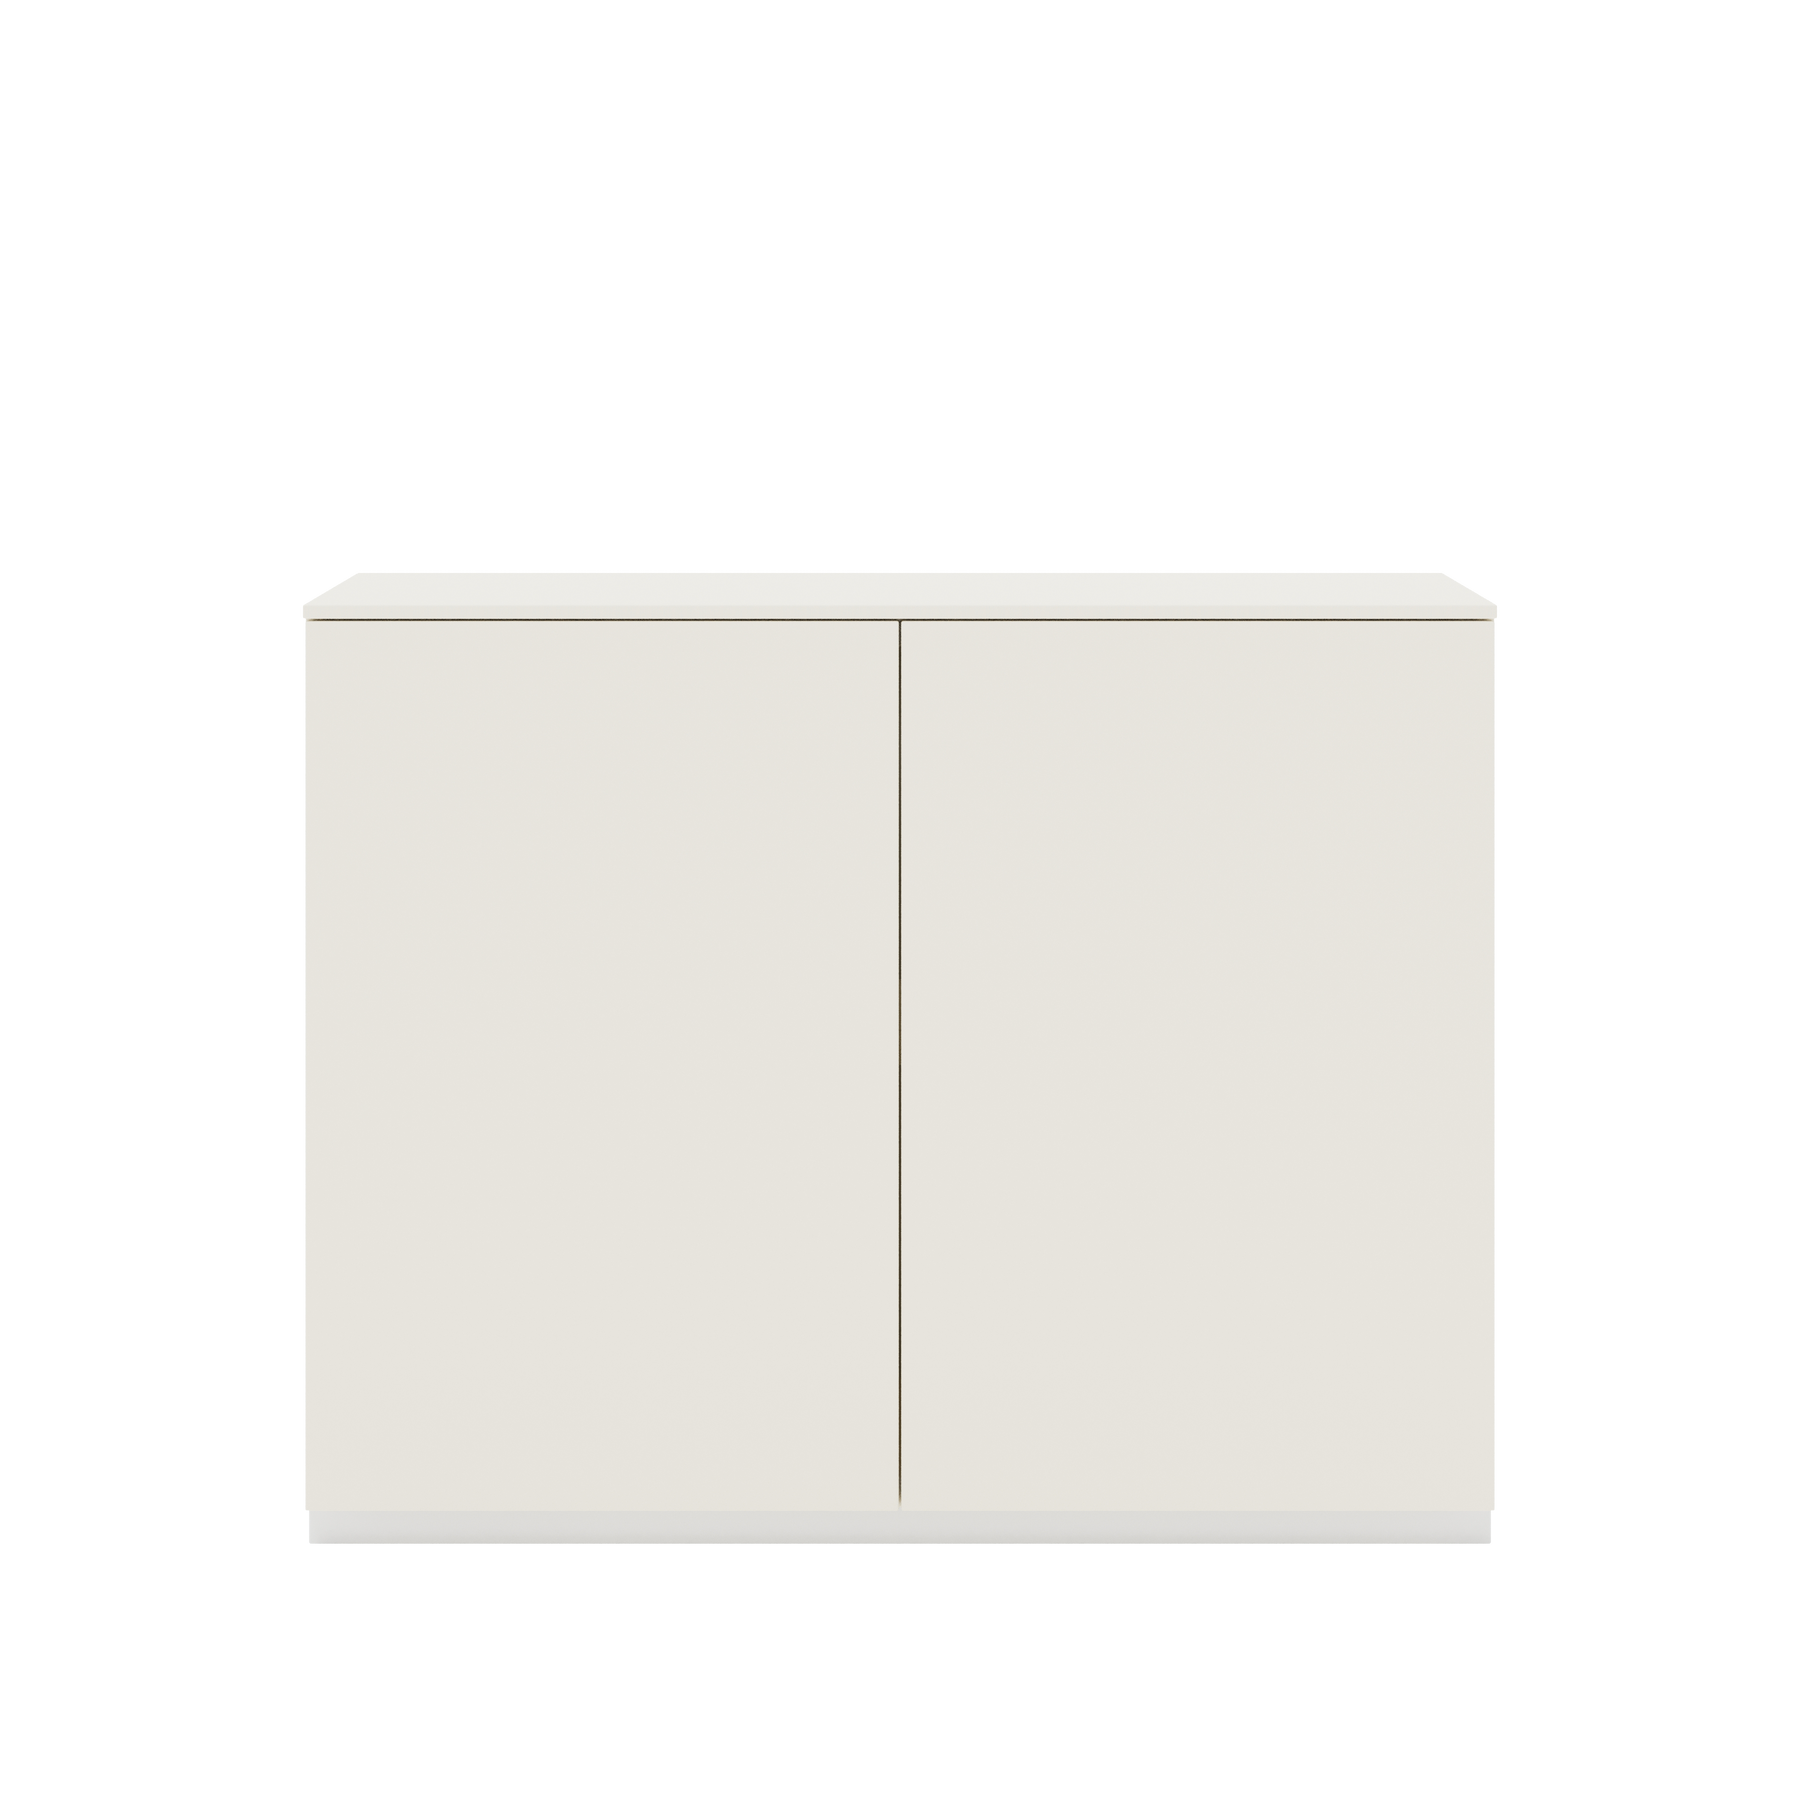 Vor weißem Hintergrund sieht man ein cremeweißes Sideboard mit zwei Drehtüren. Die Türen haben keine Griffe. Auf dem Sideboard ist eine cremeweiße Abdeckplatte angebracht.